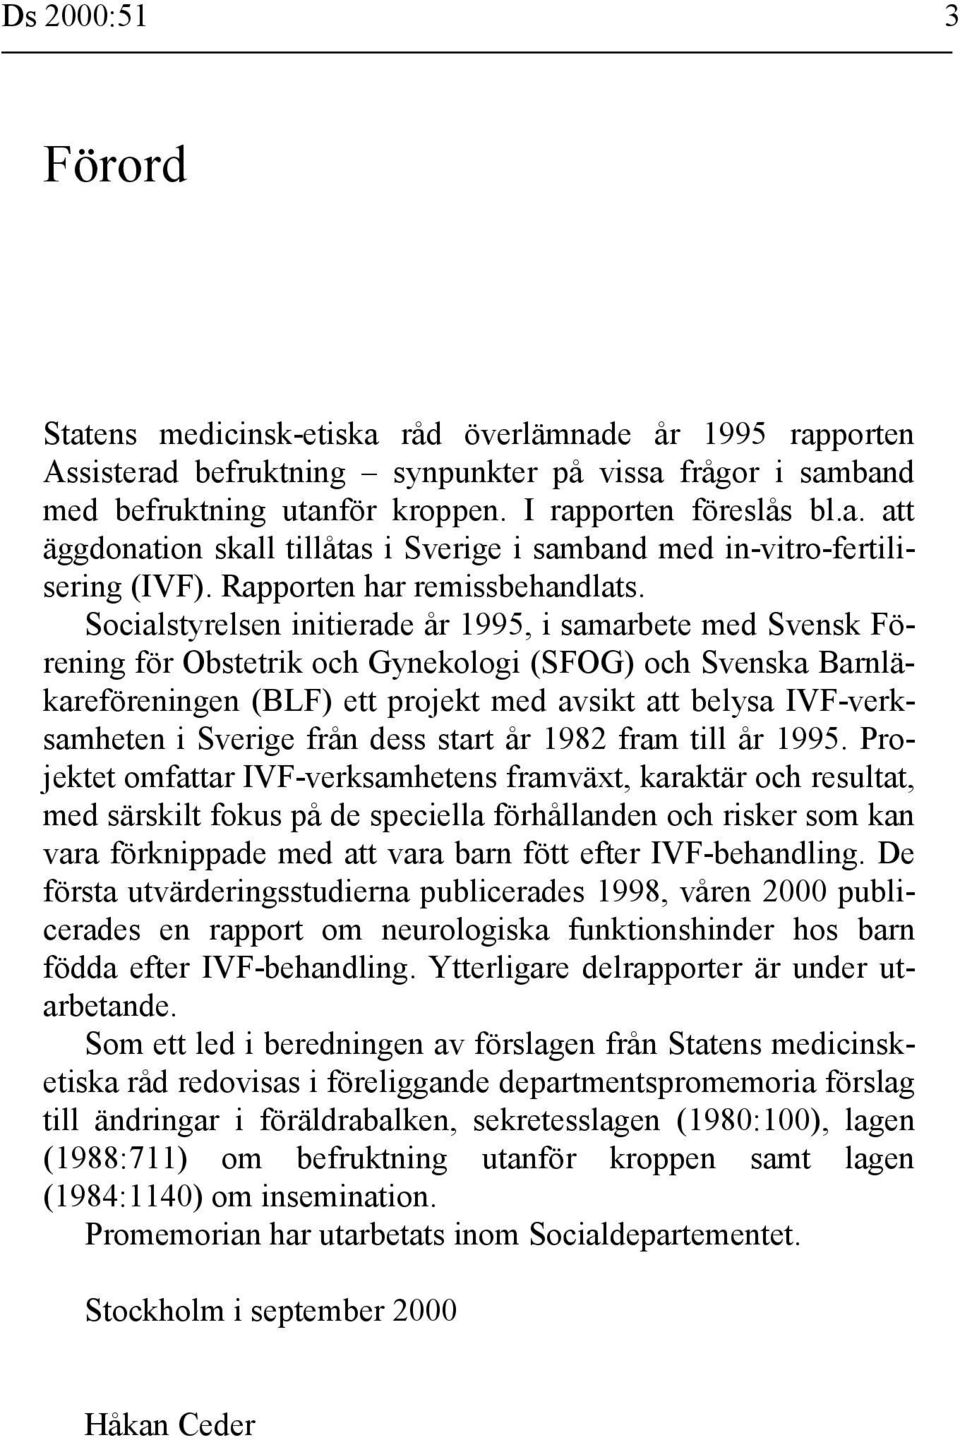 Socialstyrelsen initierade år 1995, i samarbete med Svensk Förening för Obstetrik och Gynekologi (SFOG) och Svenska Barnläkareföreningen (BLF) ett projekt med avsikt att belysa IVF-verksamheten i